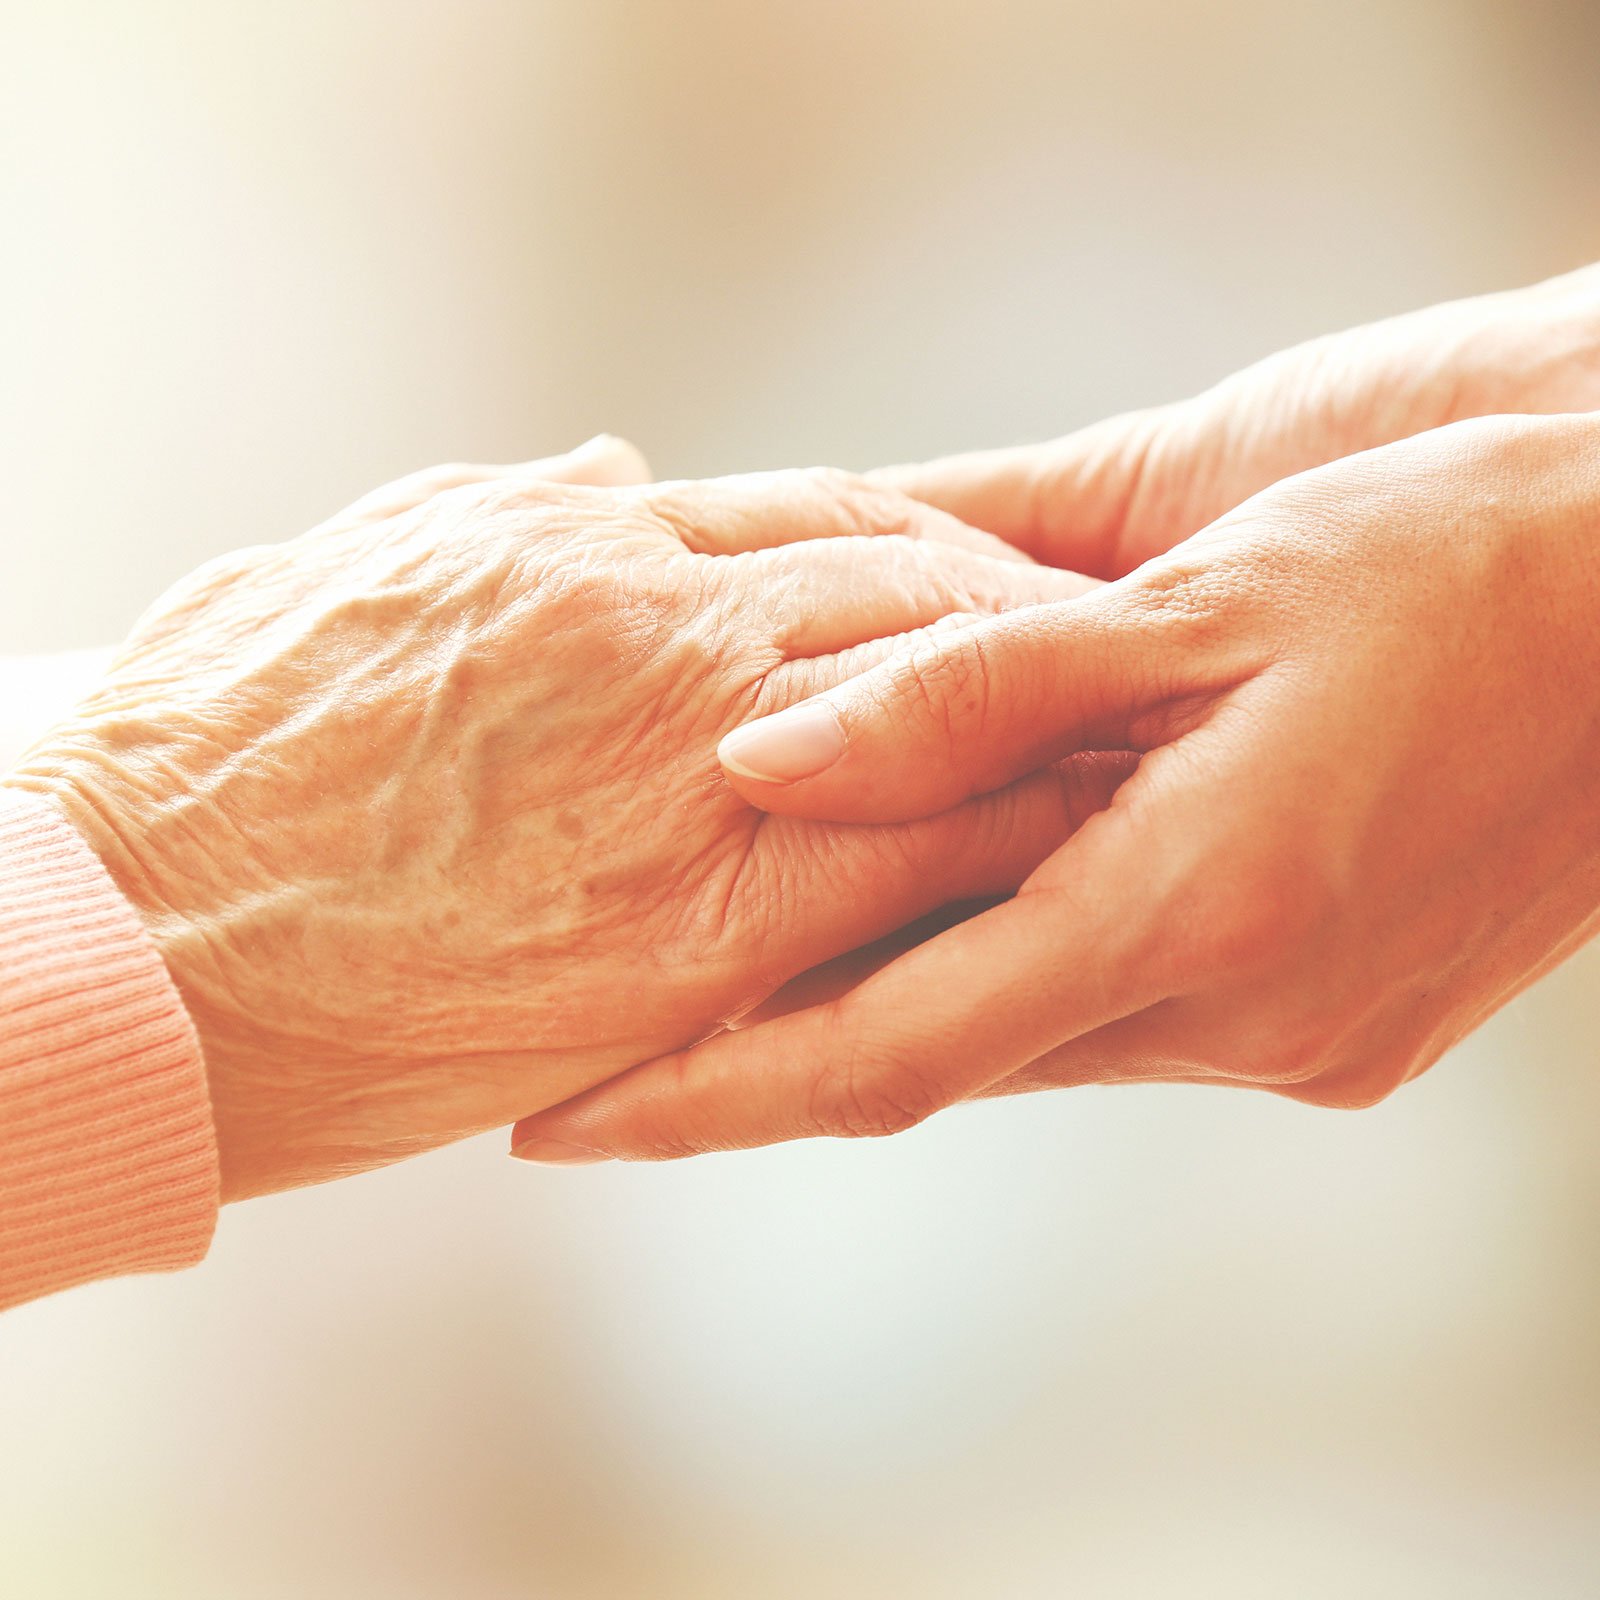 Senior and caregiver hands